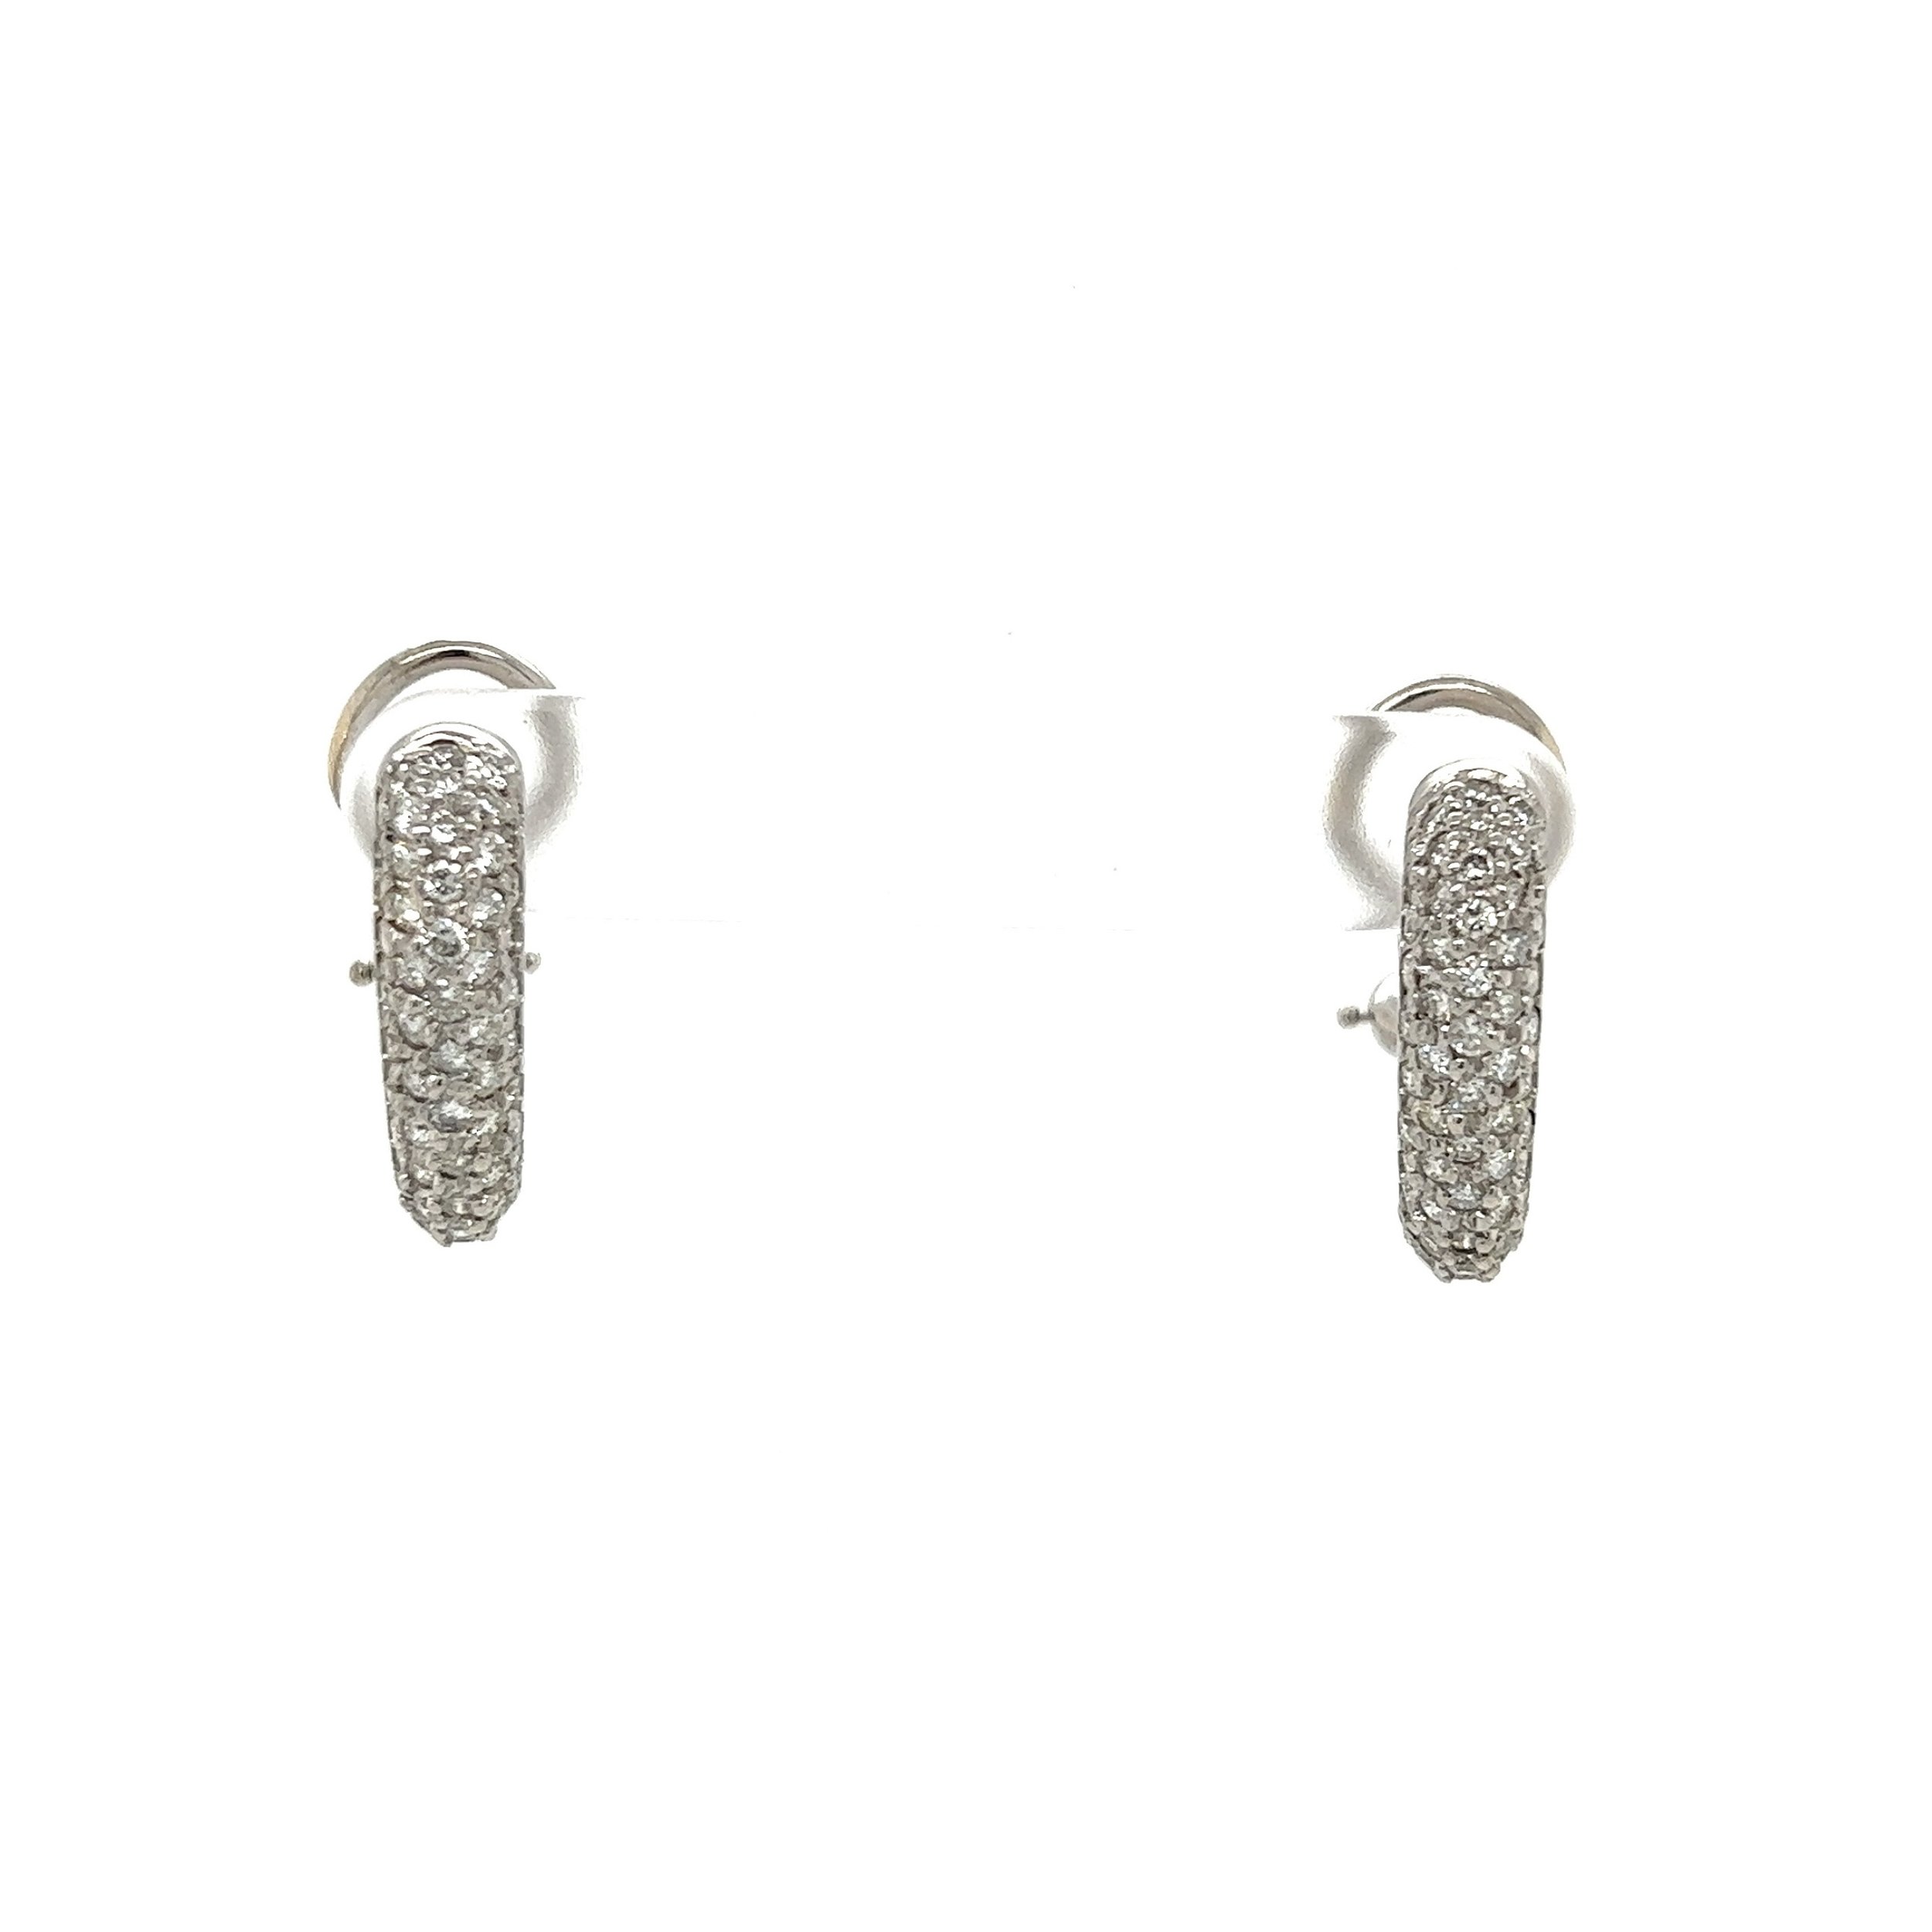 18K WG 4 Row Pave 1.50tcw Diamond Half Earrings w/Omega Backs 7.4g, 0.76in